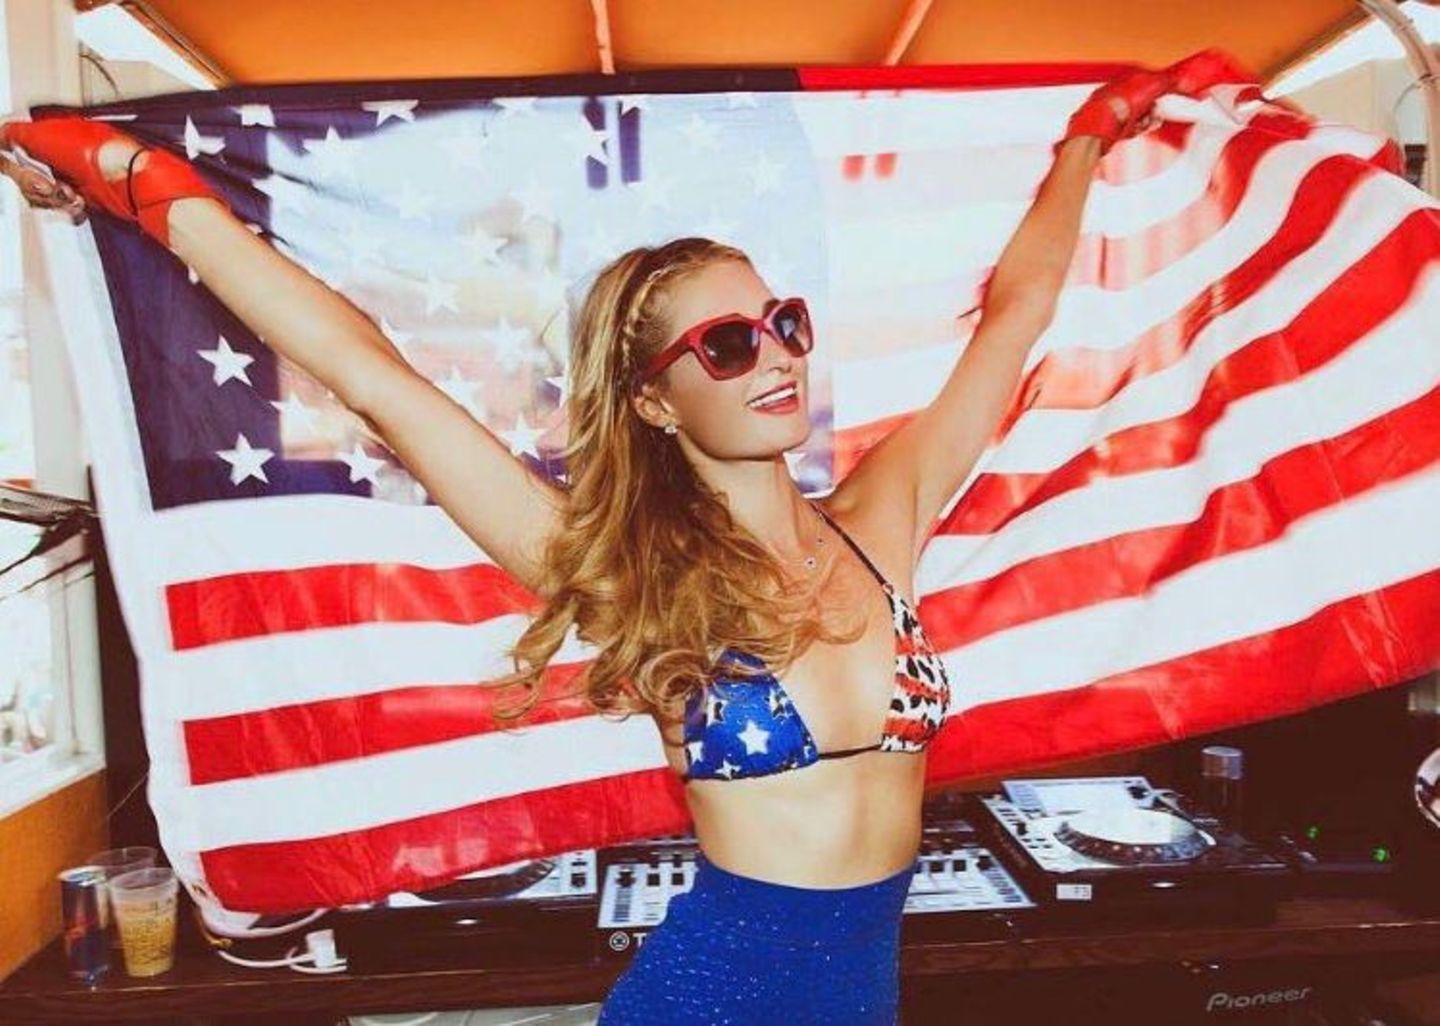 Wenn es etwas zu feiern gibt, ist auch Party-Queen Paris Hilton nicht weit. Mit großer USA-Flagge über den Kopf gehoben, wünscht sie einen frohen "Independence Day".